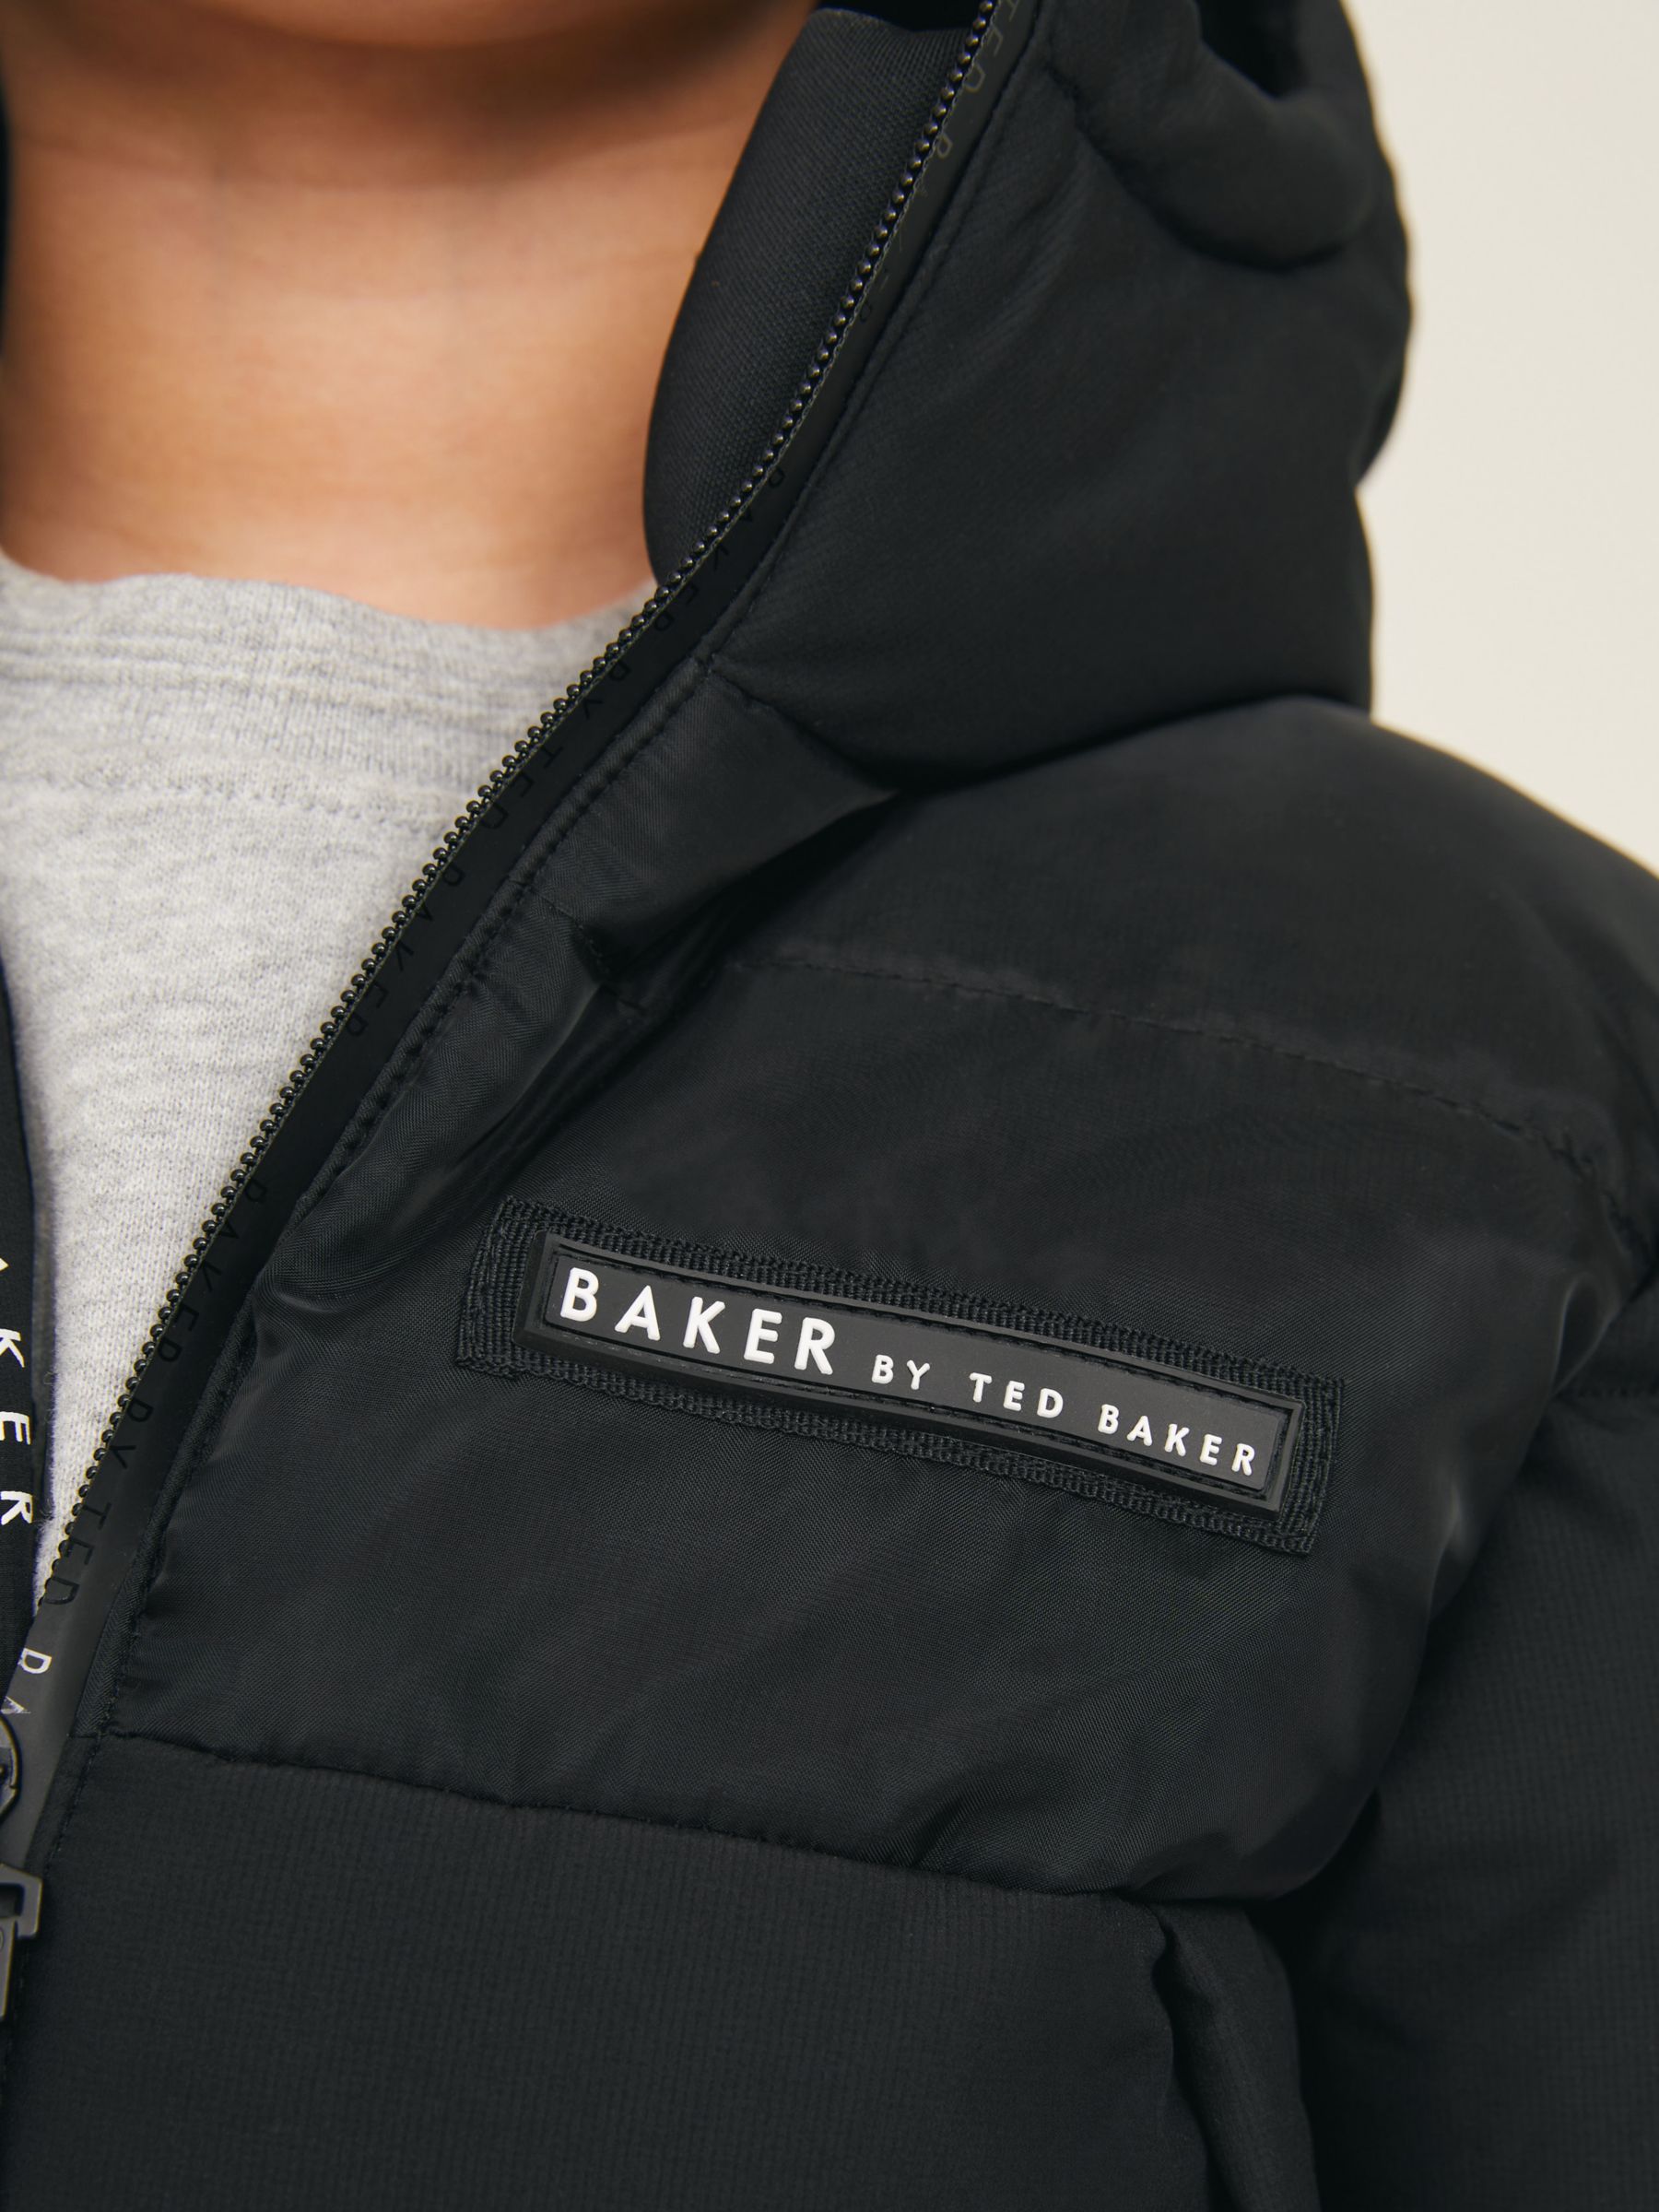 Ted Baker Kids' Baker Logo Puffer Jacket, Black, 10 years